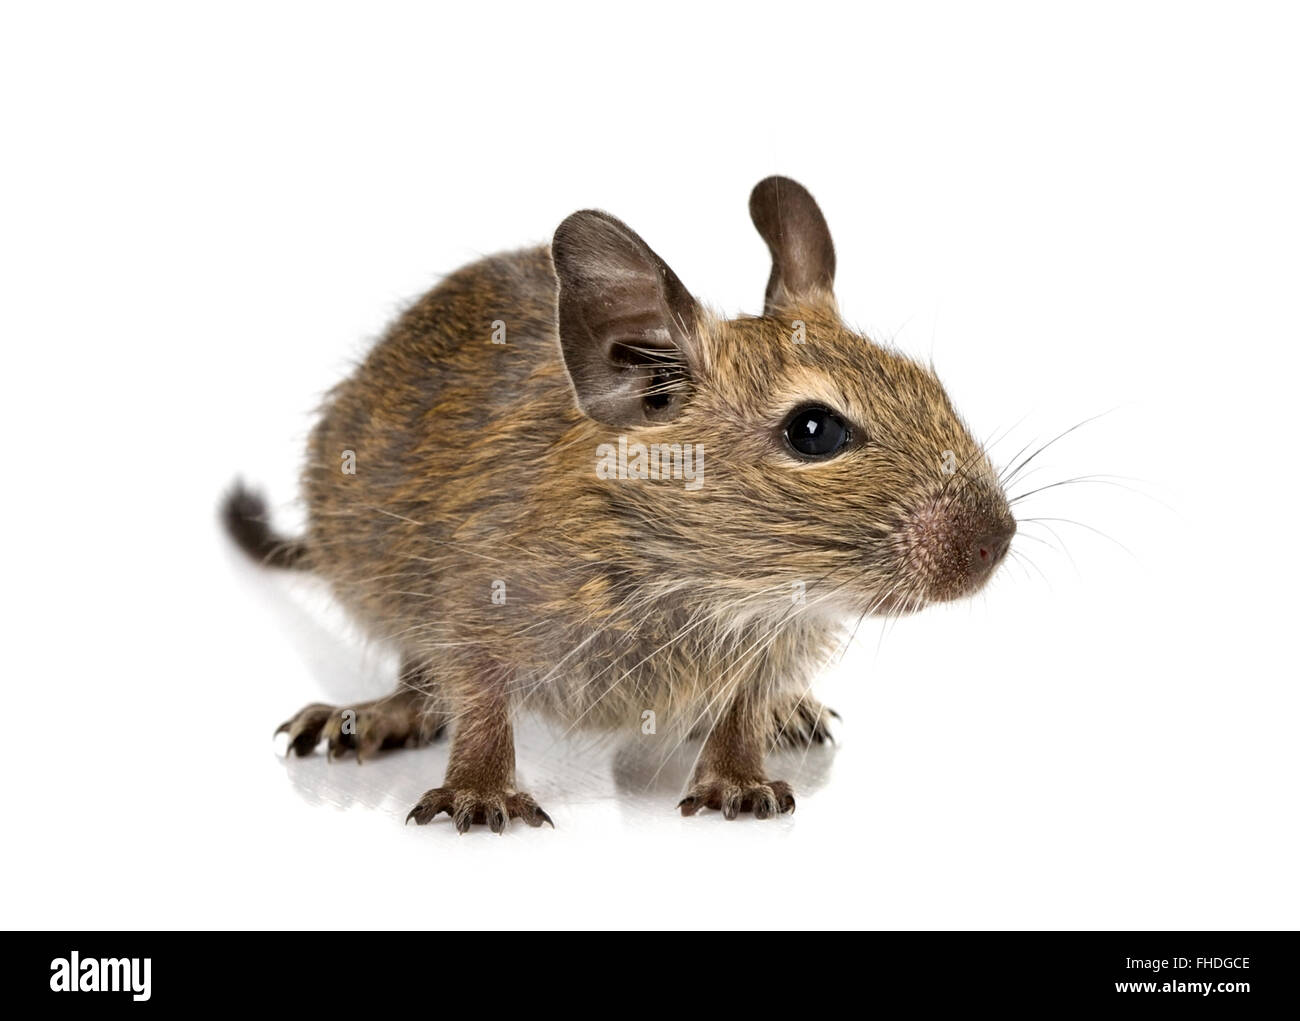 baby rodent degu Stock Photo